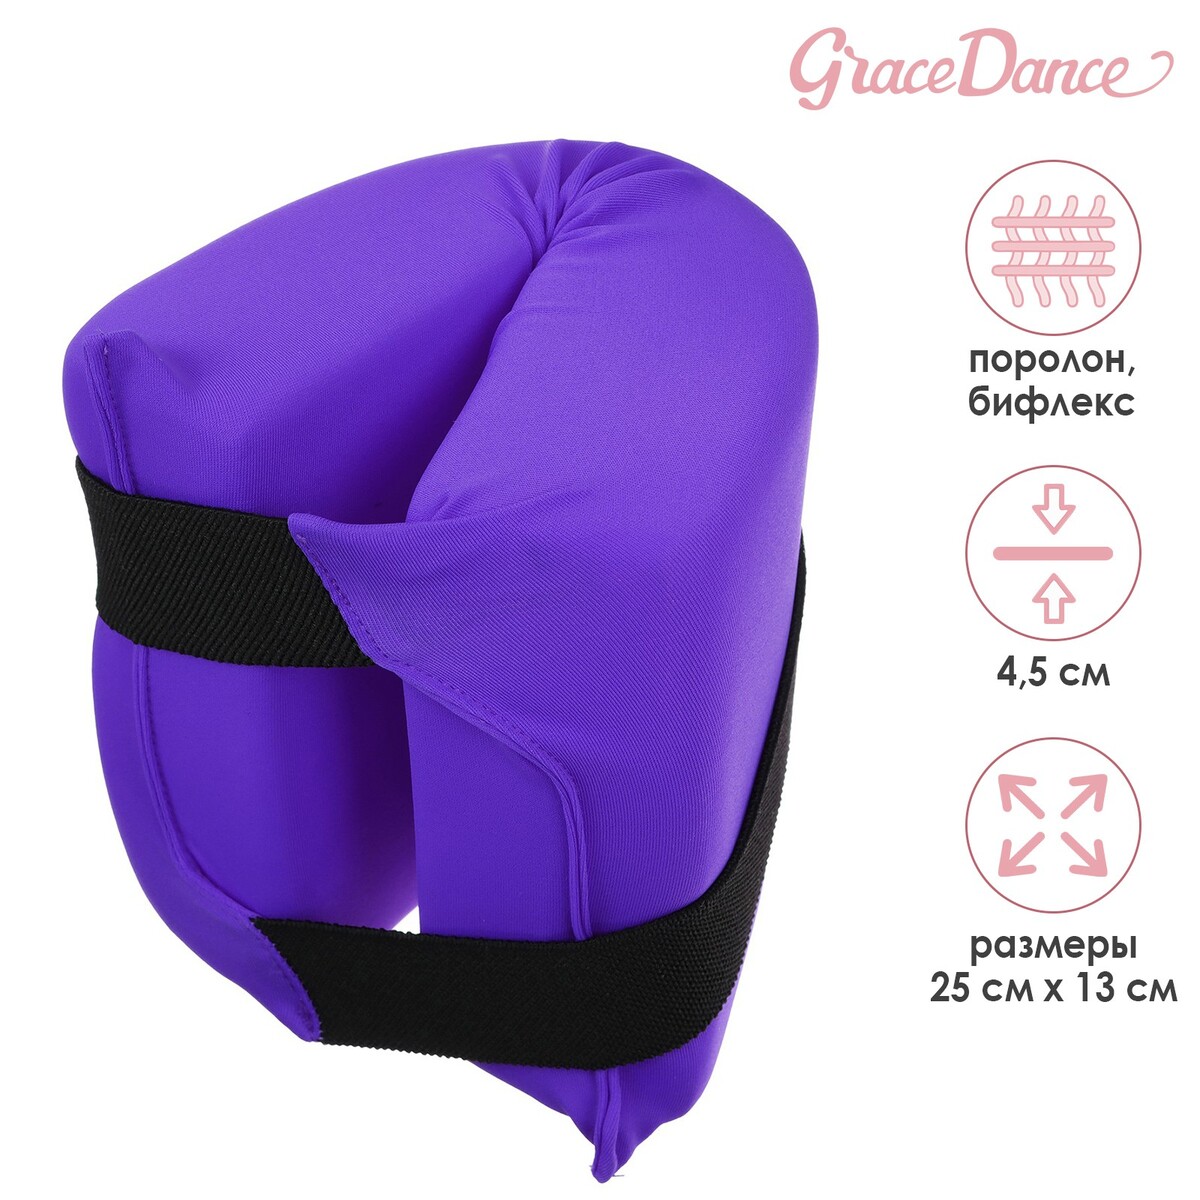 Подушка для растяжки grace dance, цвет фиолетовый подушка для растяжки grace dance фиолетовый